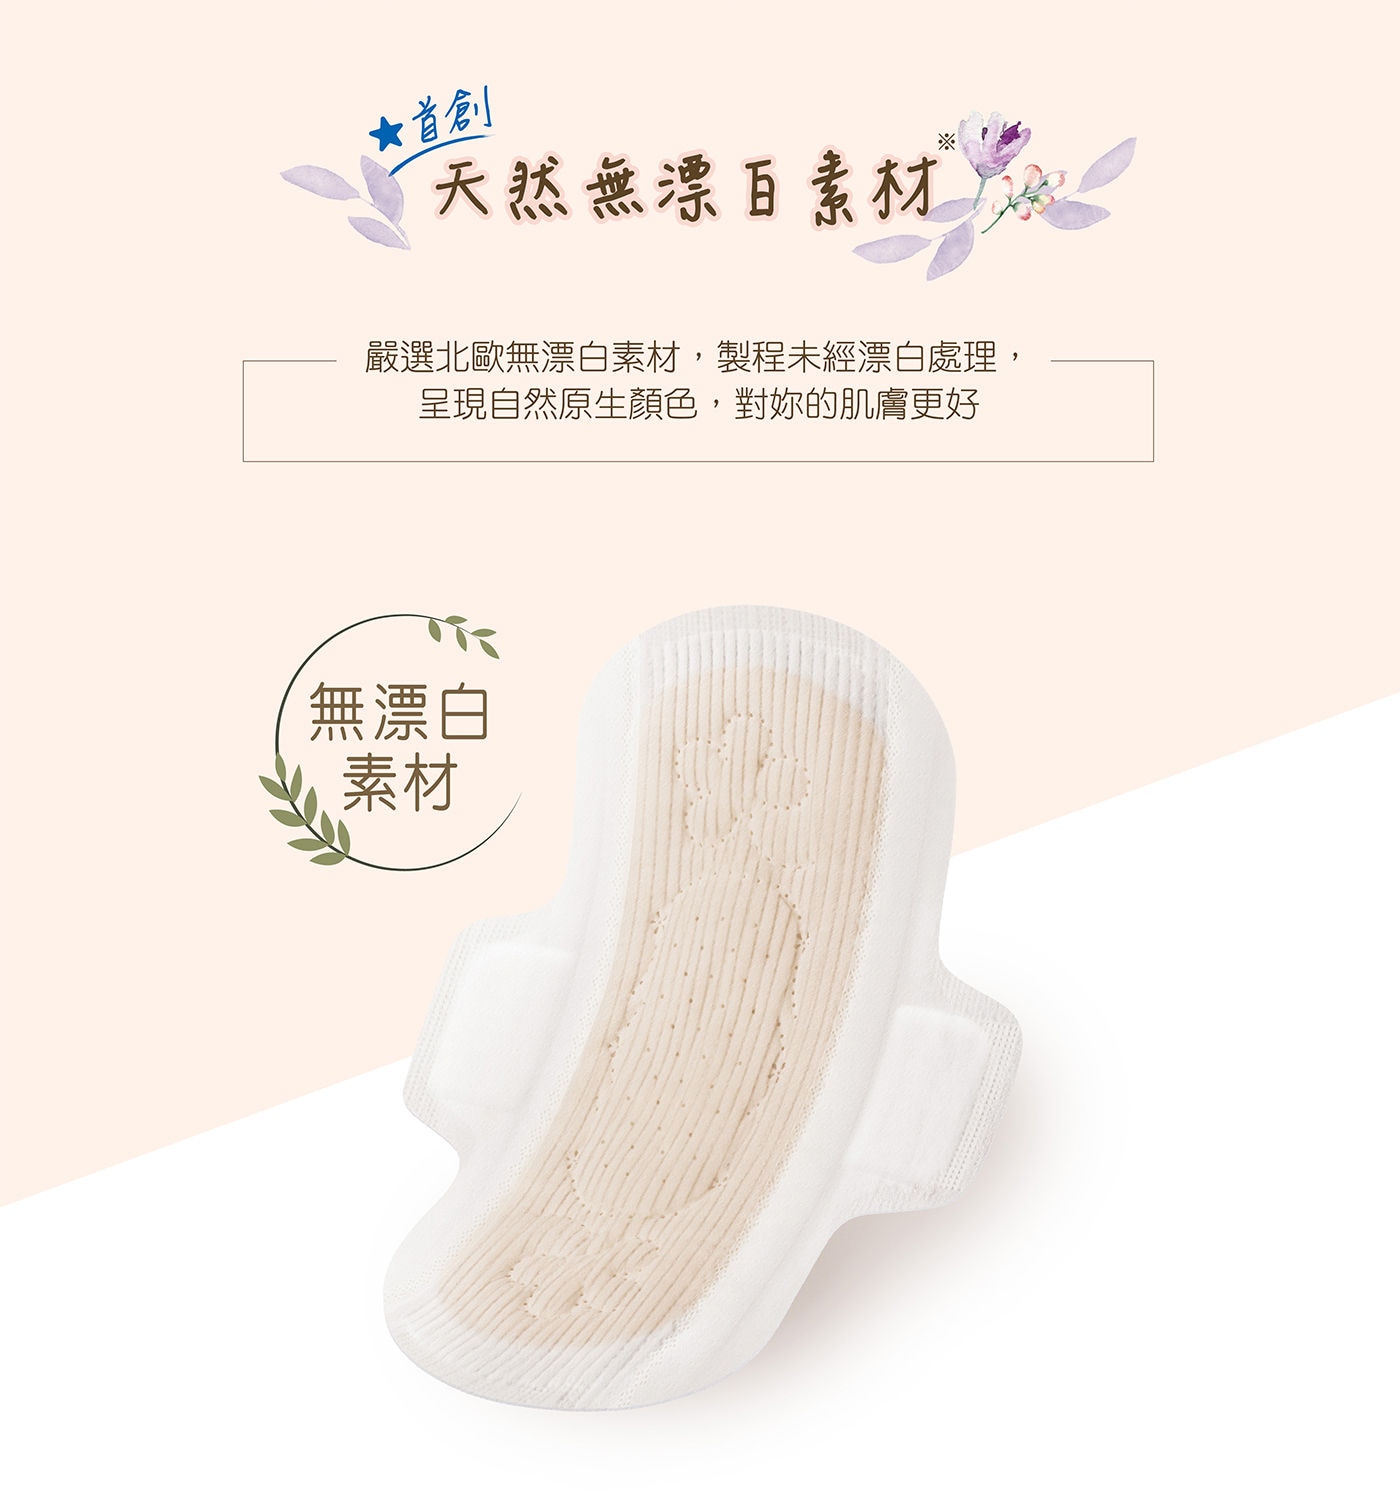 蘇菲 極淨肌天然原生棉 極薄0.1型日本開發乾爽瞬淨層,能吸入底層,持續乾爽